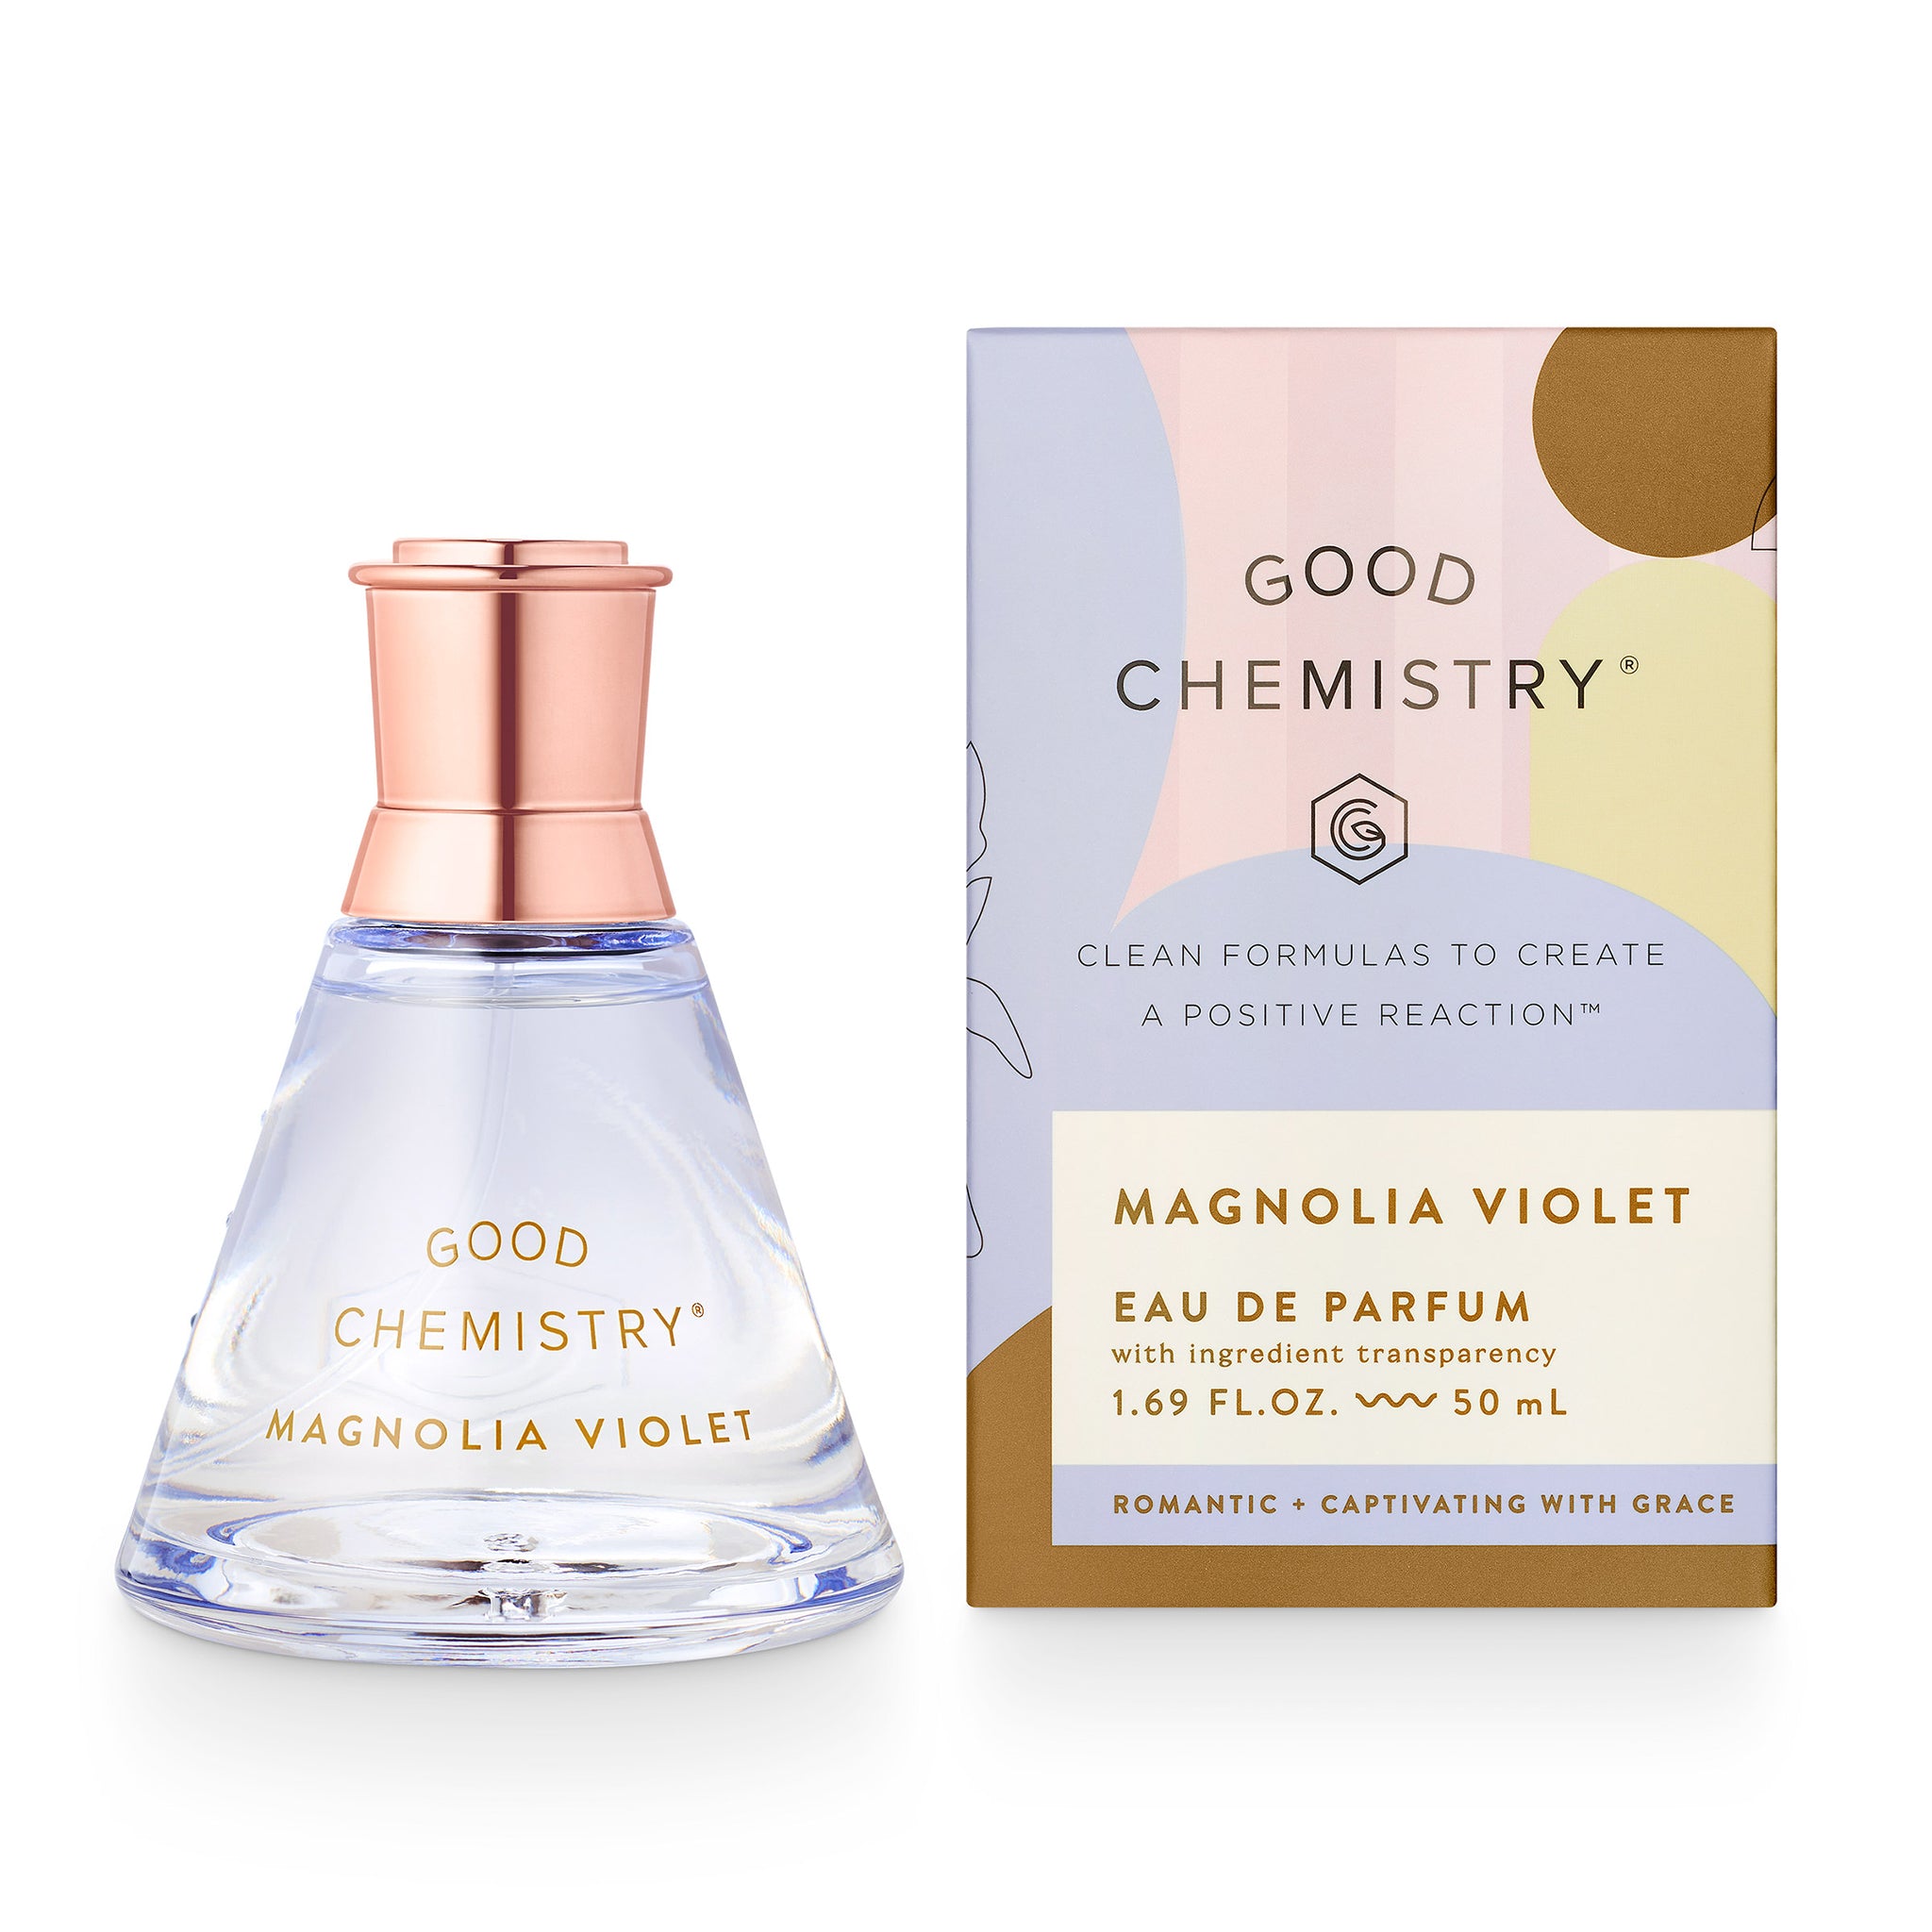 Magnolia Violet Eau de Parfum